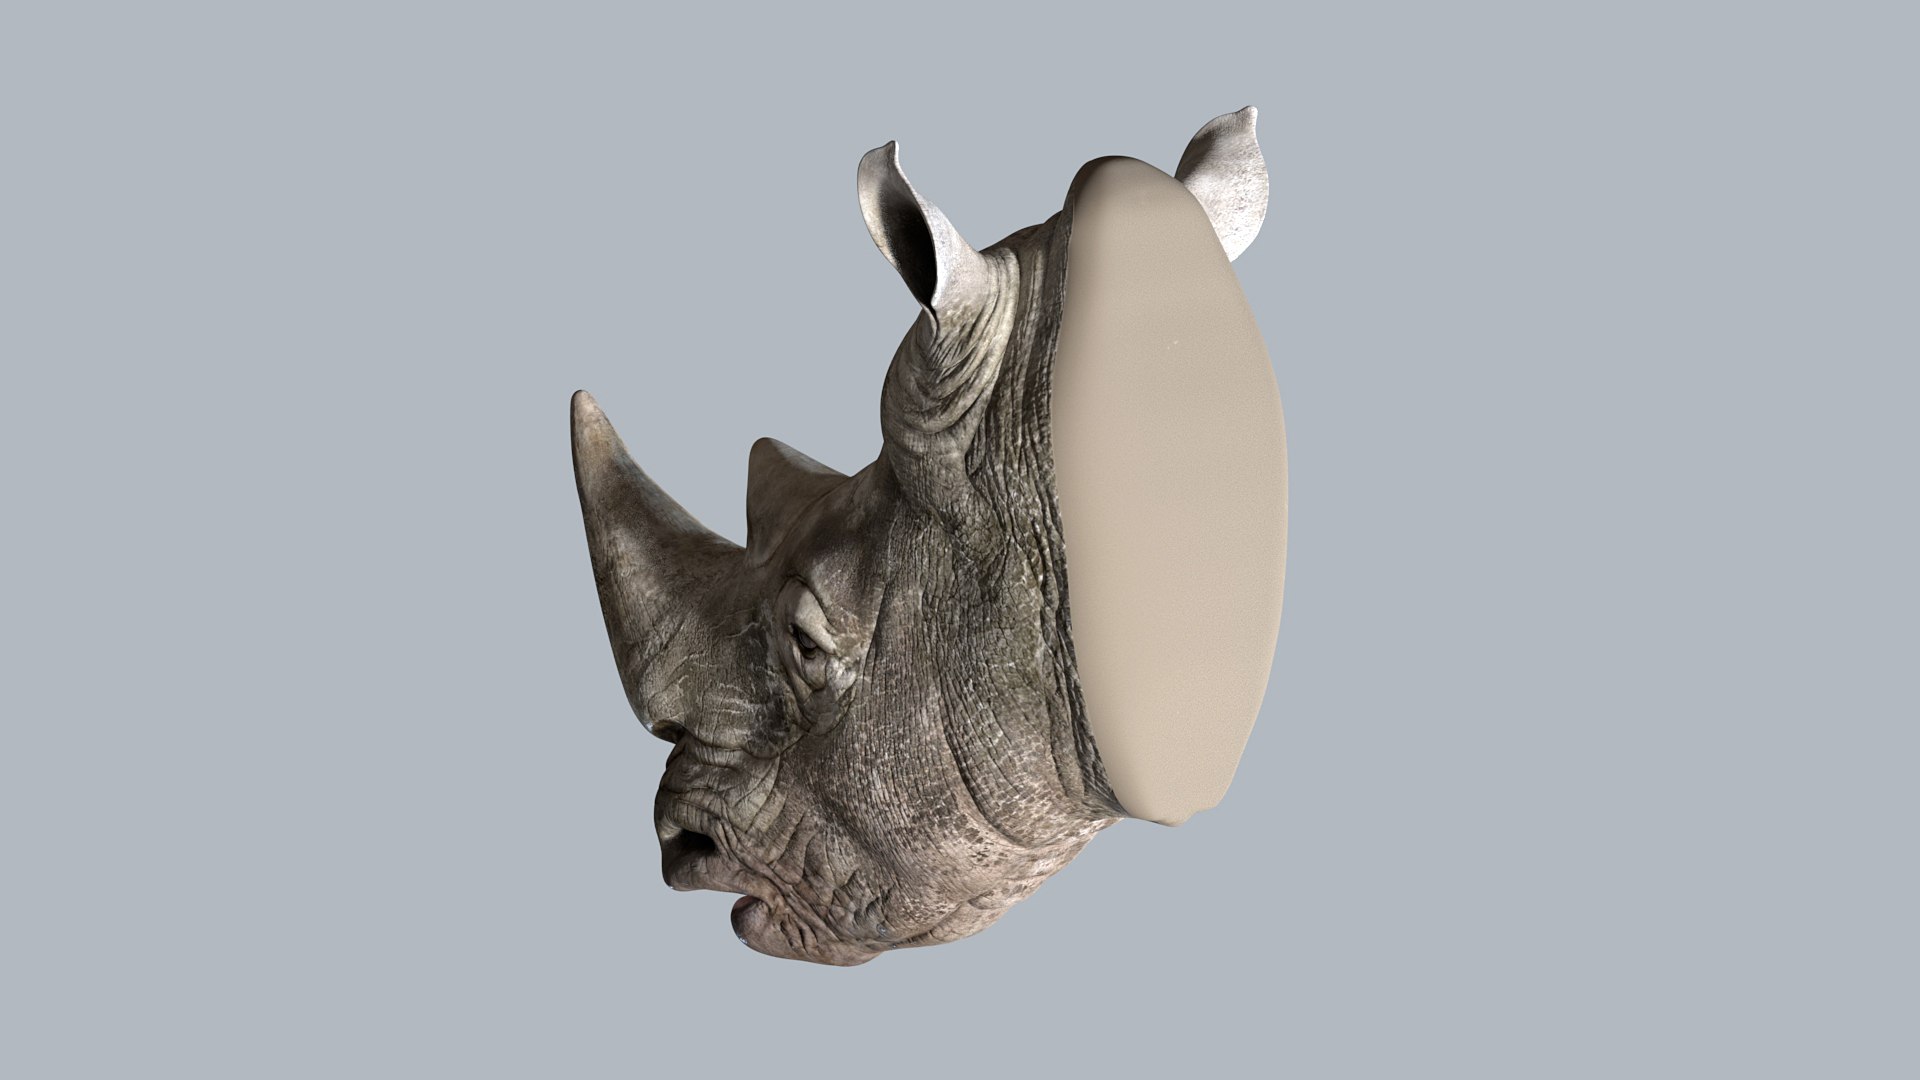 Head nerva 3D model - TurboSquid 1444527